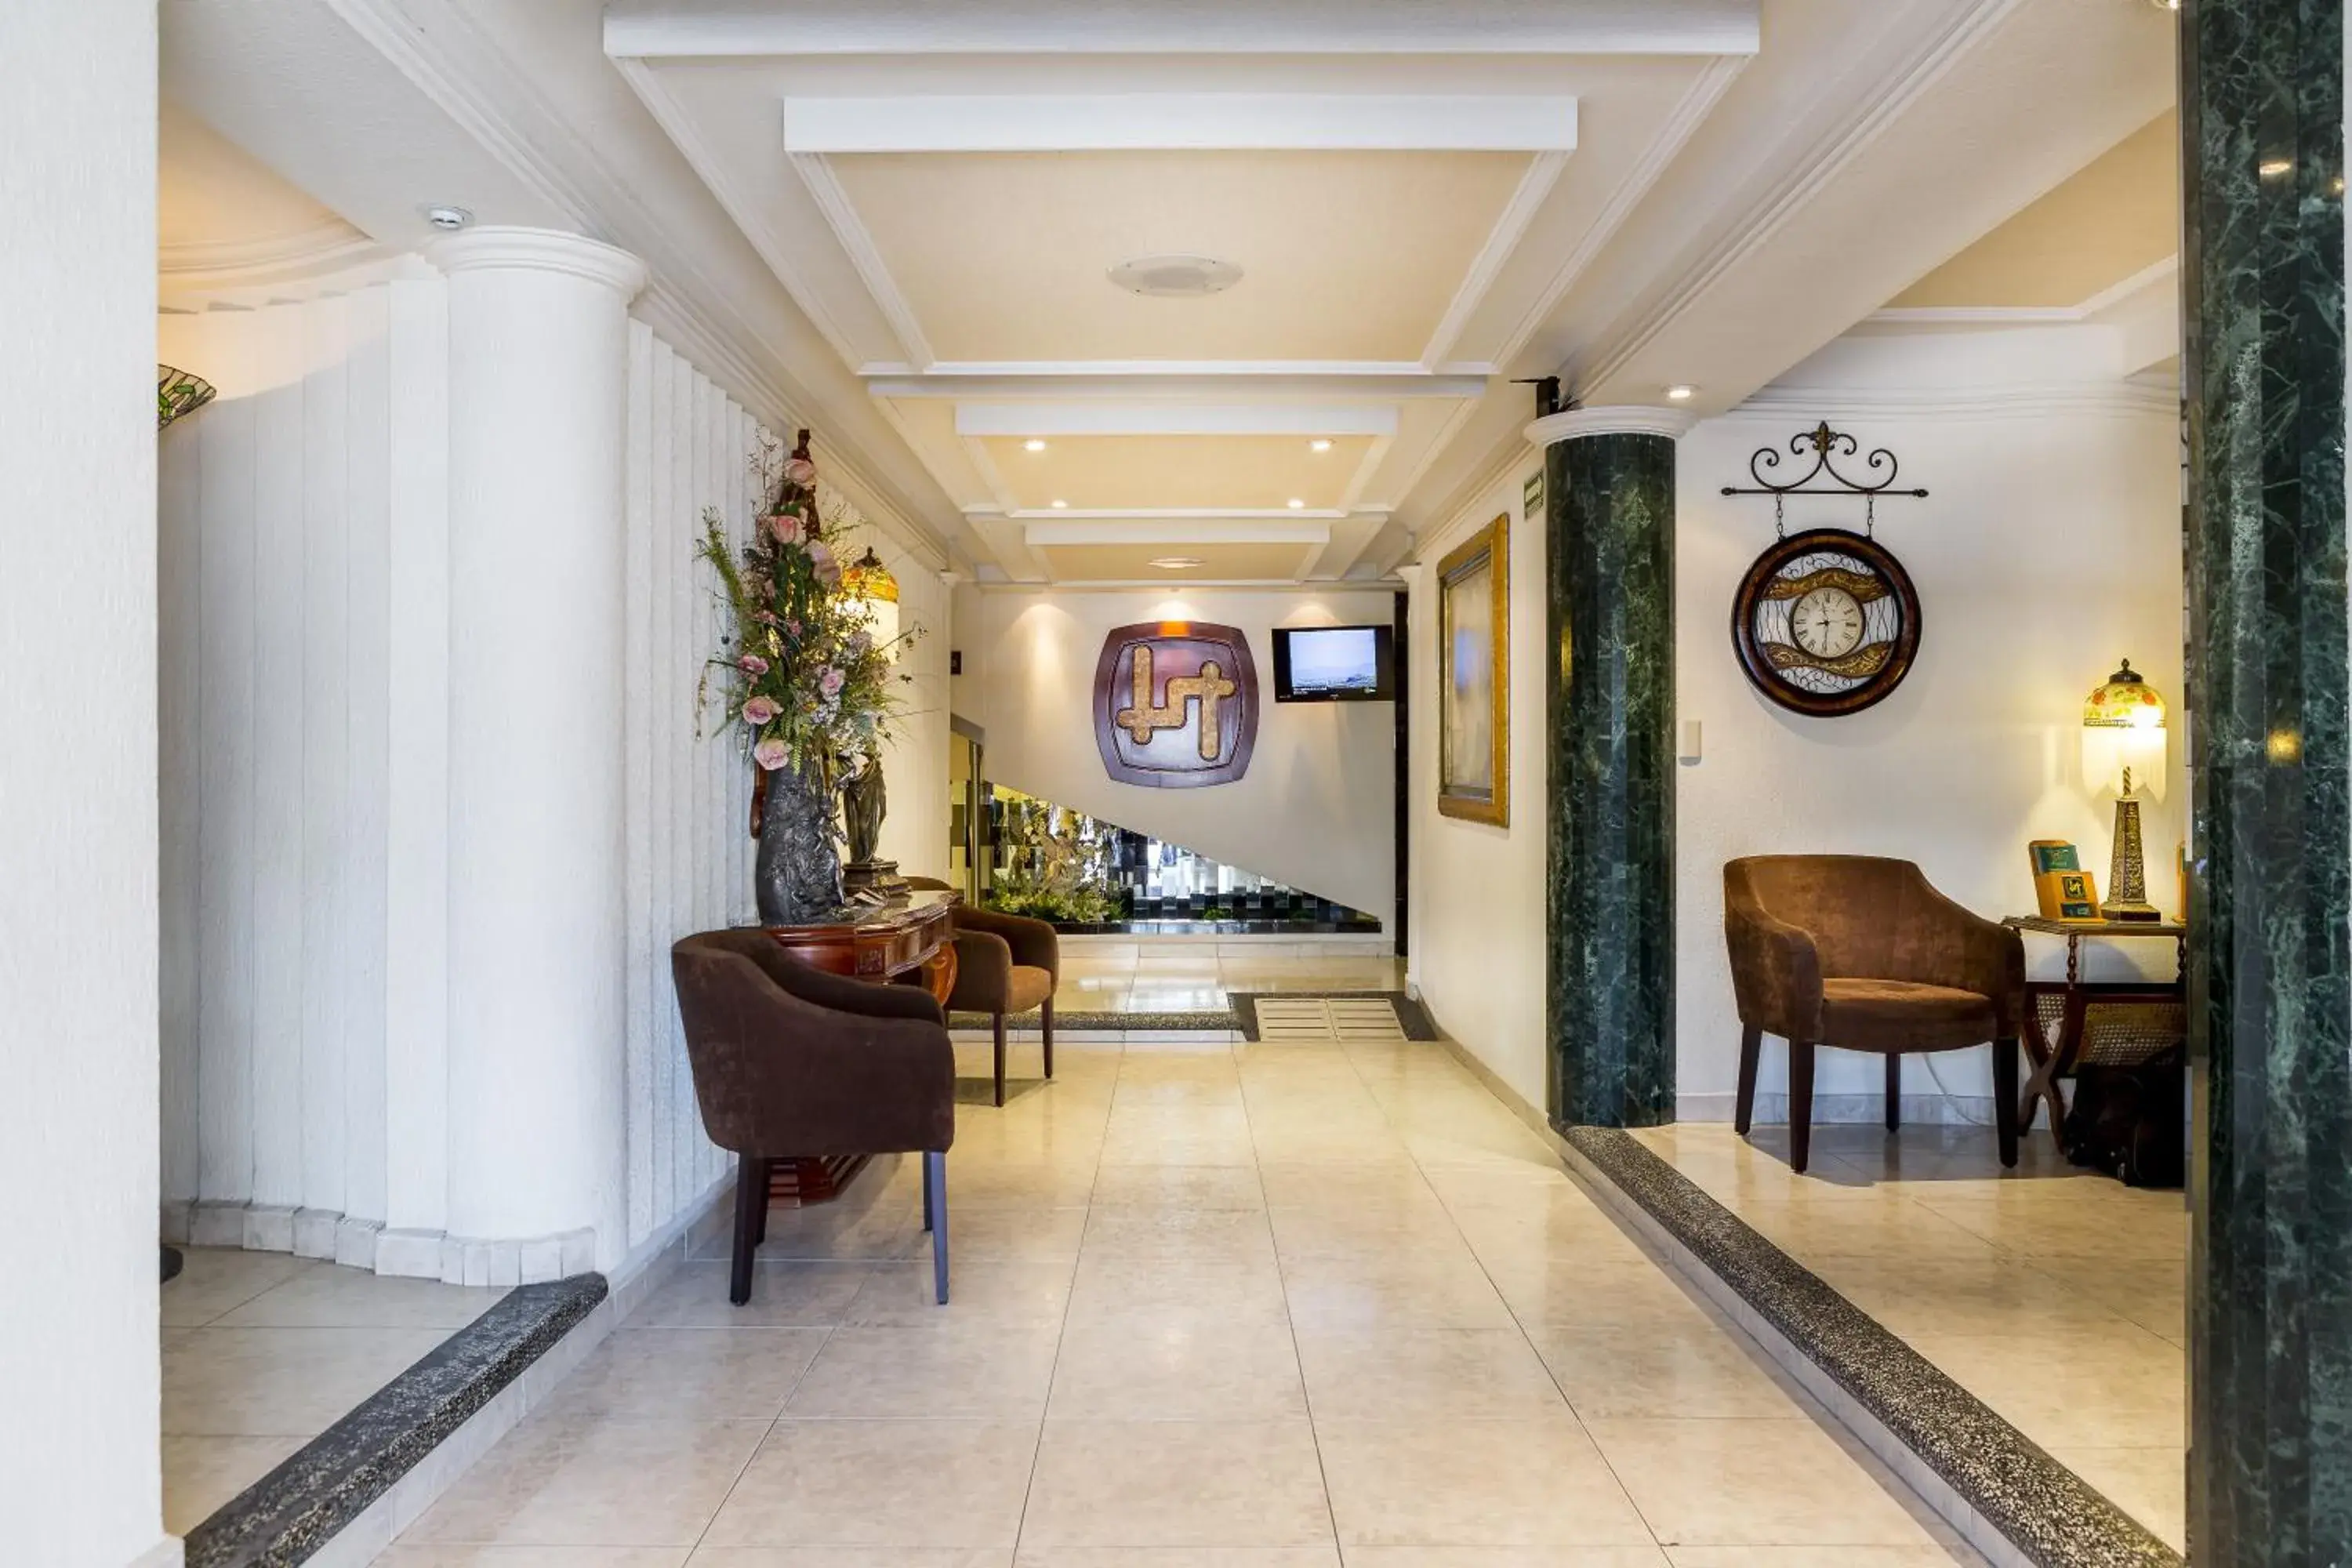 Lobby or reception, Lobby/Reception in Hotel Aliana